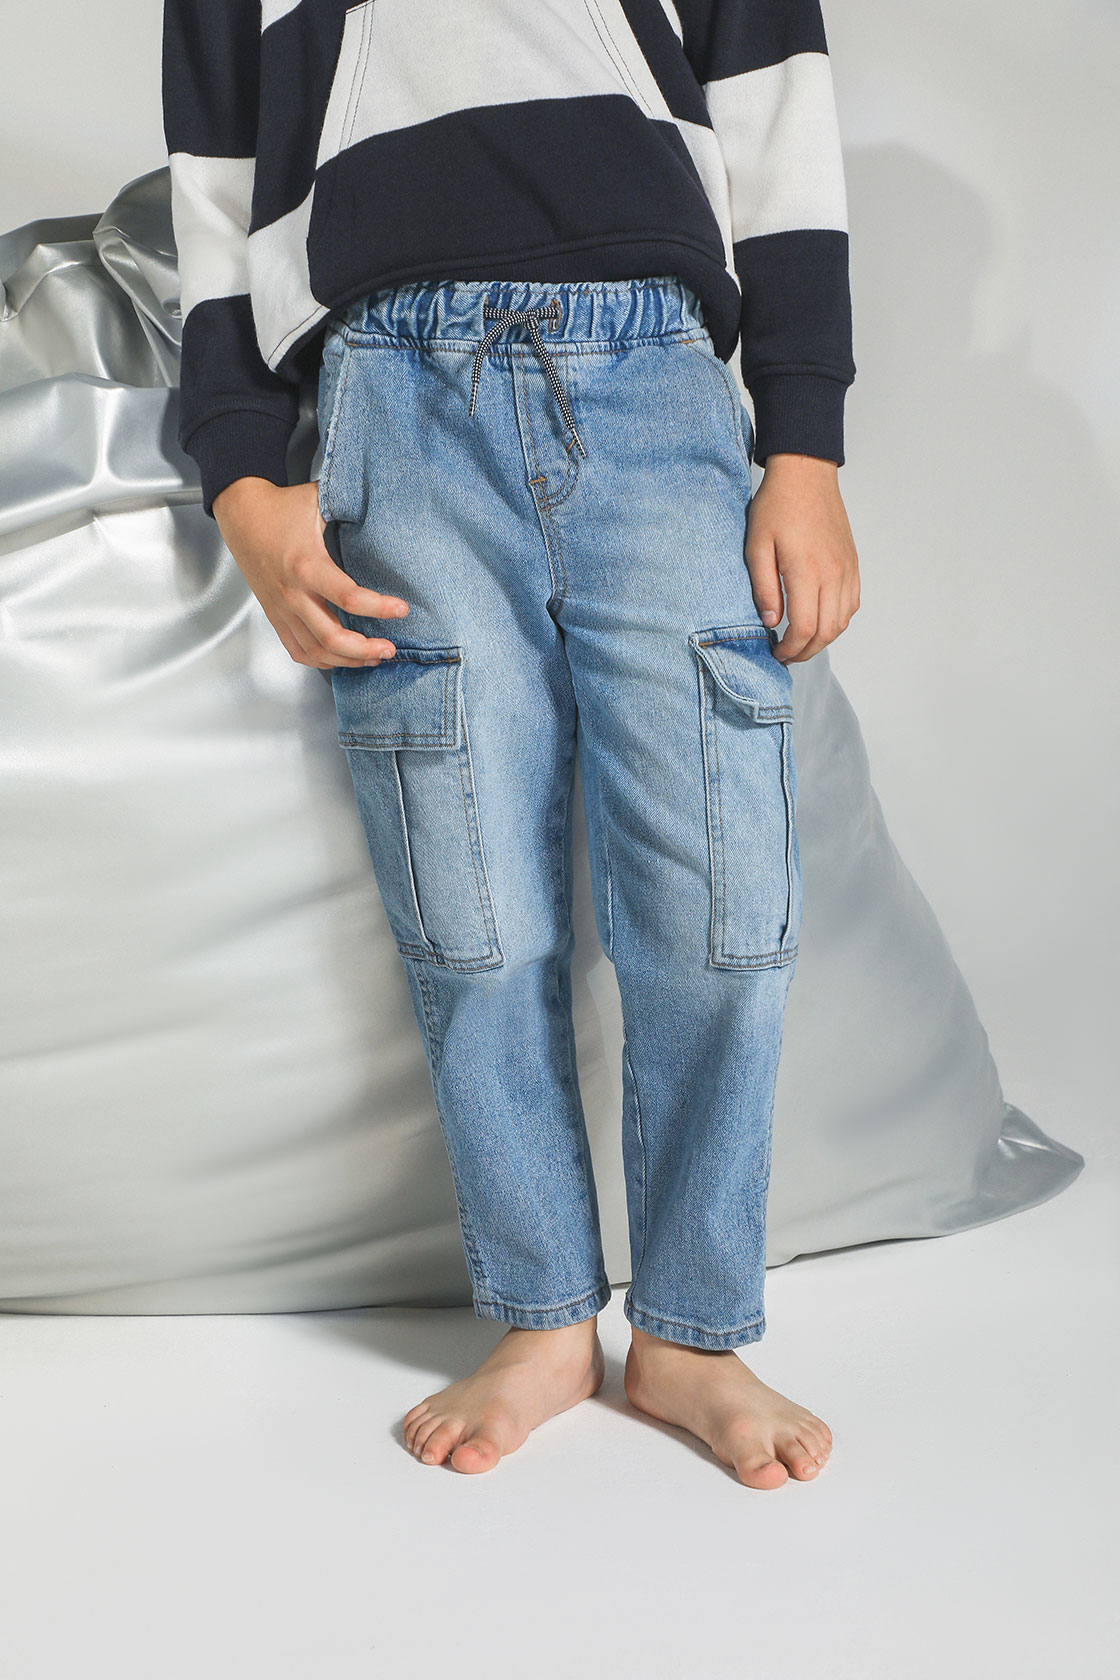 jeans loose fit mezclilla para niño